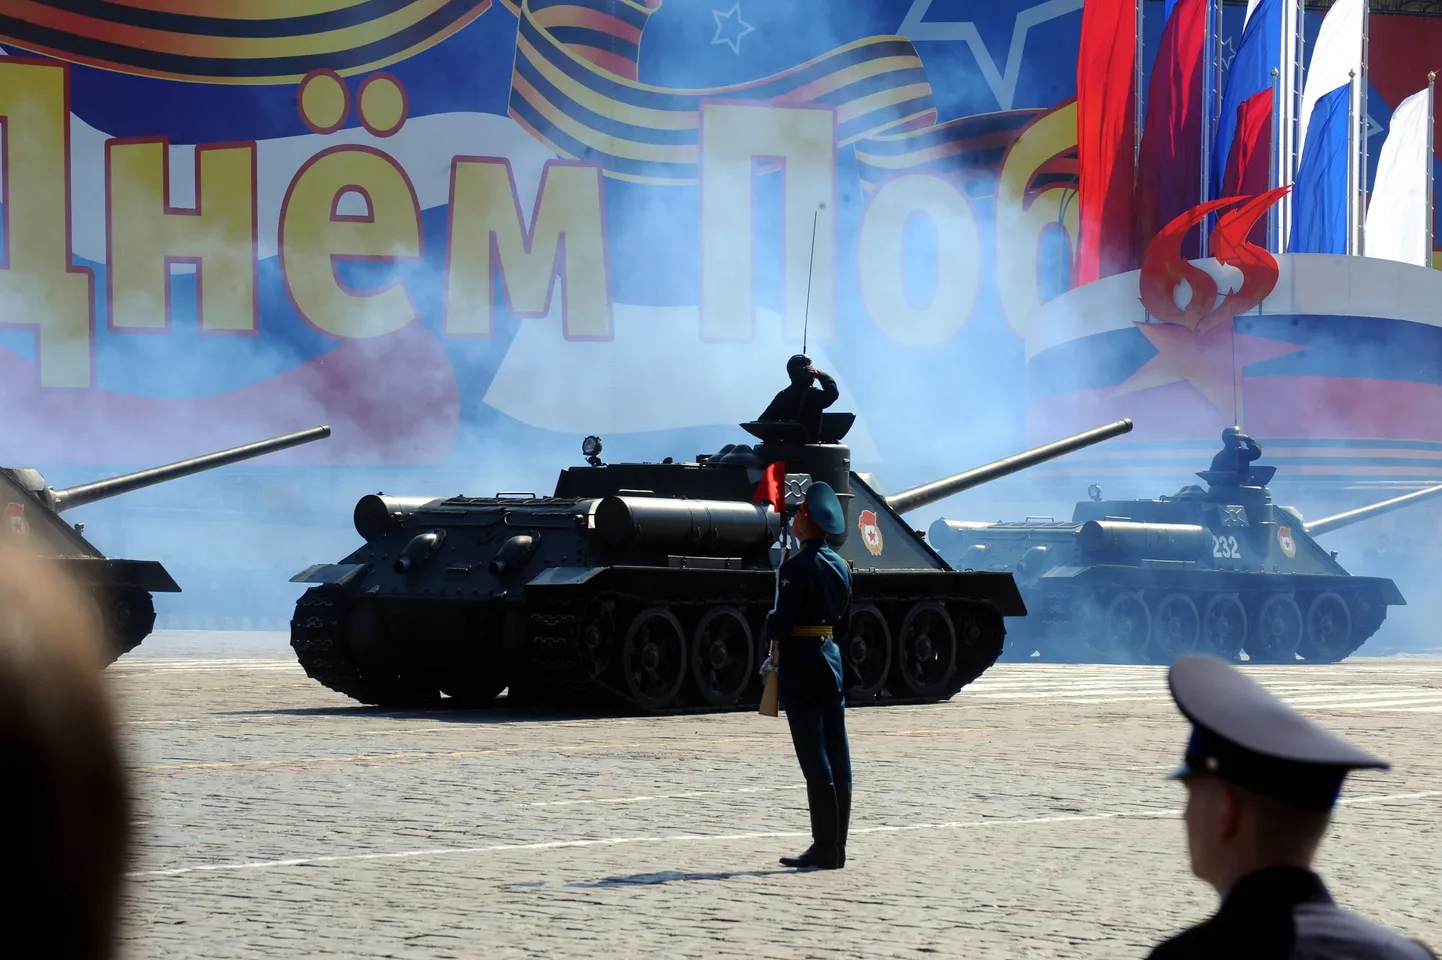 Проведение парада в честь 70-й годовщины окончания Великой Отечественной войны в Москве пока под вопросом.